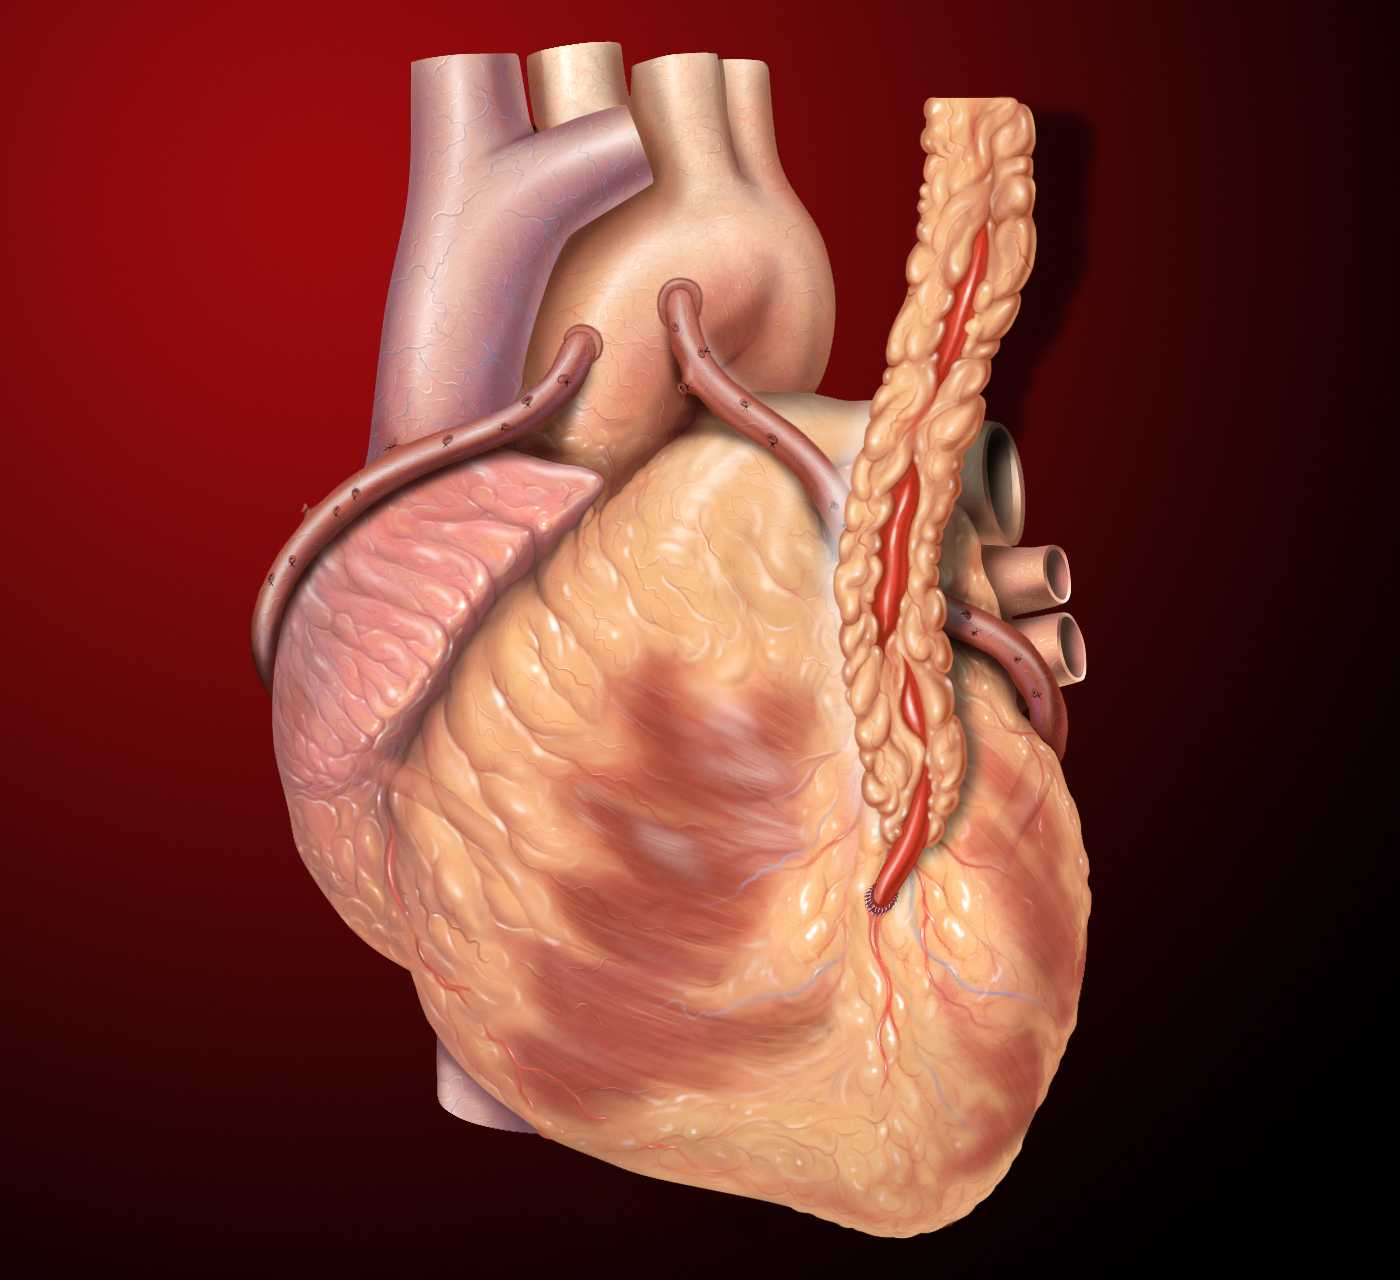 Что такое шунтирование клапана. сколько и как живут люди после шунтирования сосудов сердца